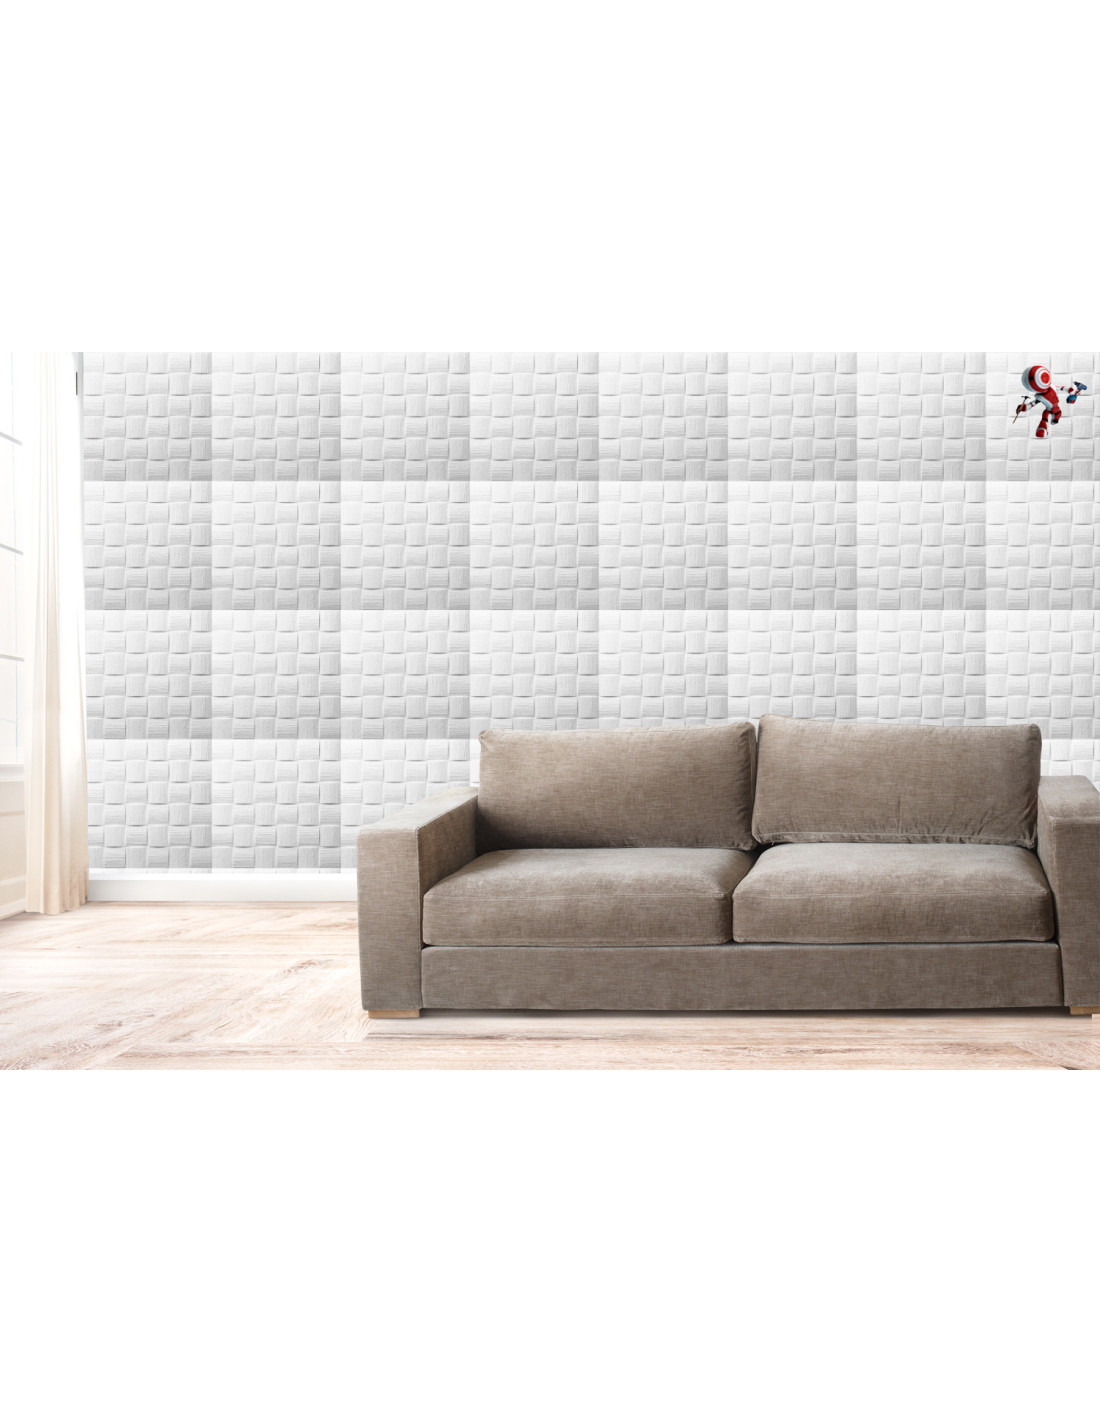 Boiserie moderne in polistirolo per pareti e soffitti pannello 50x50 cm  Eudecor